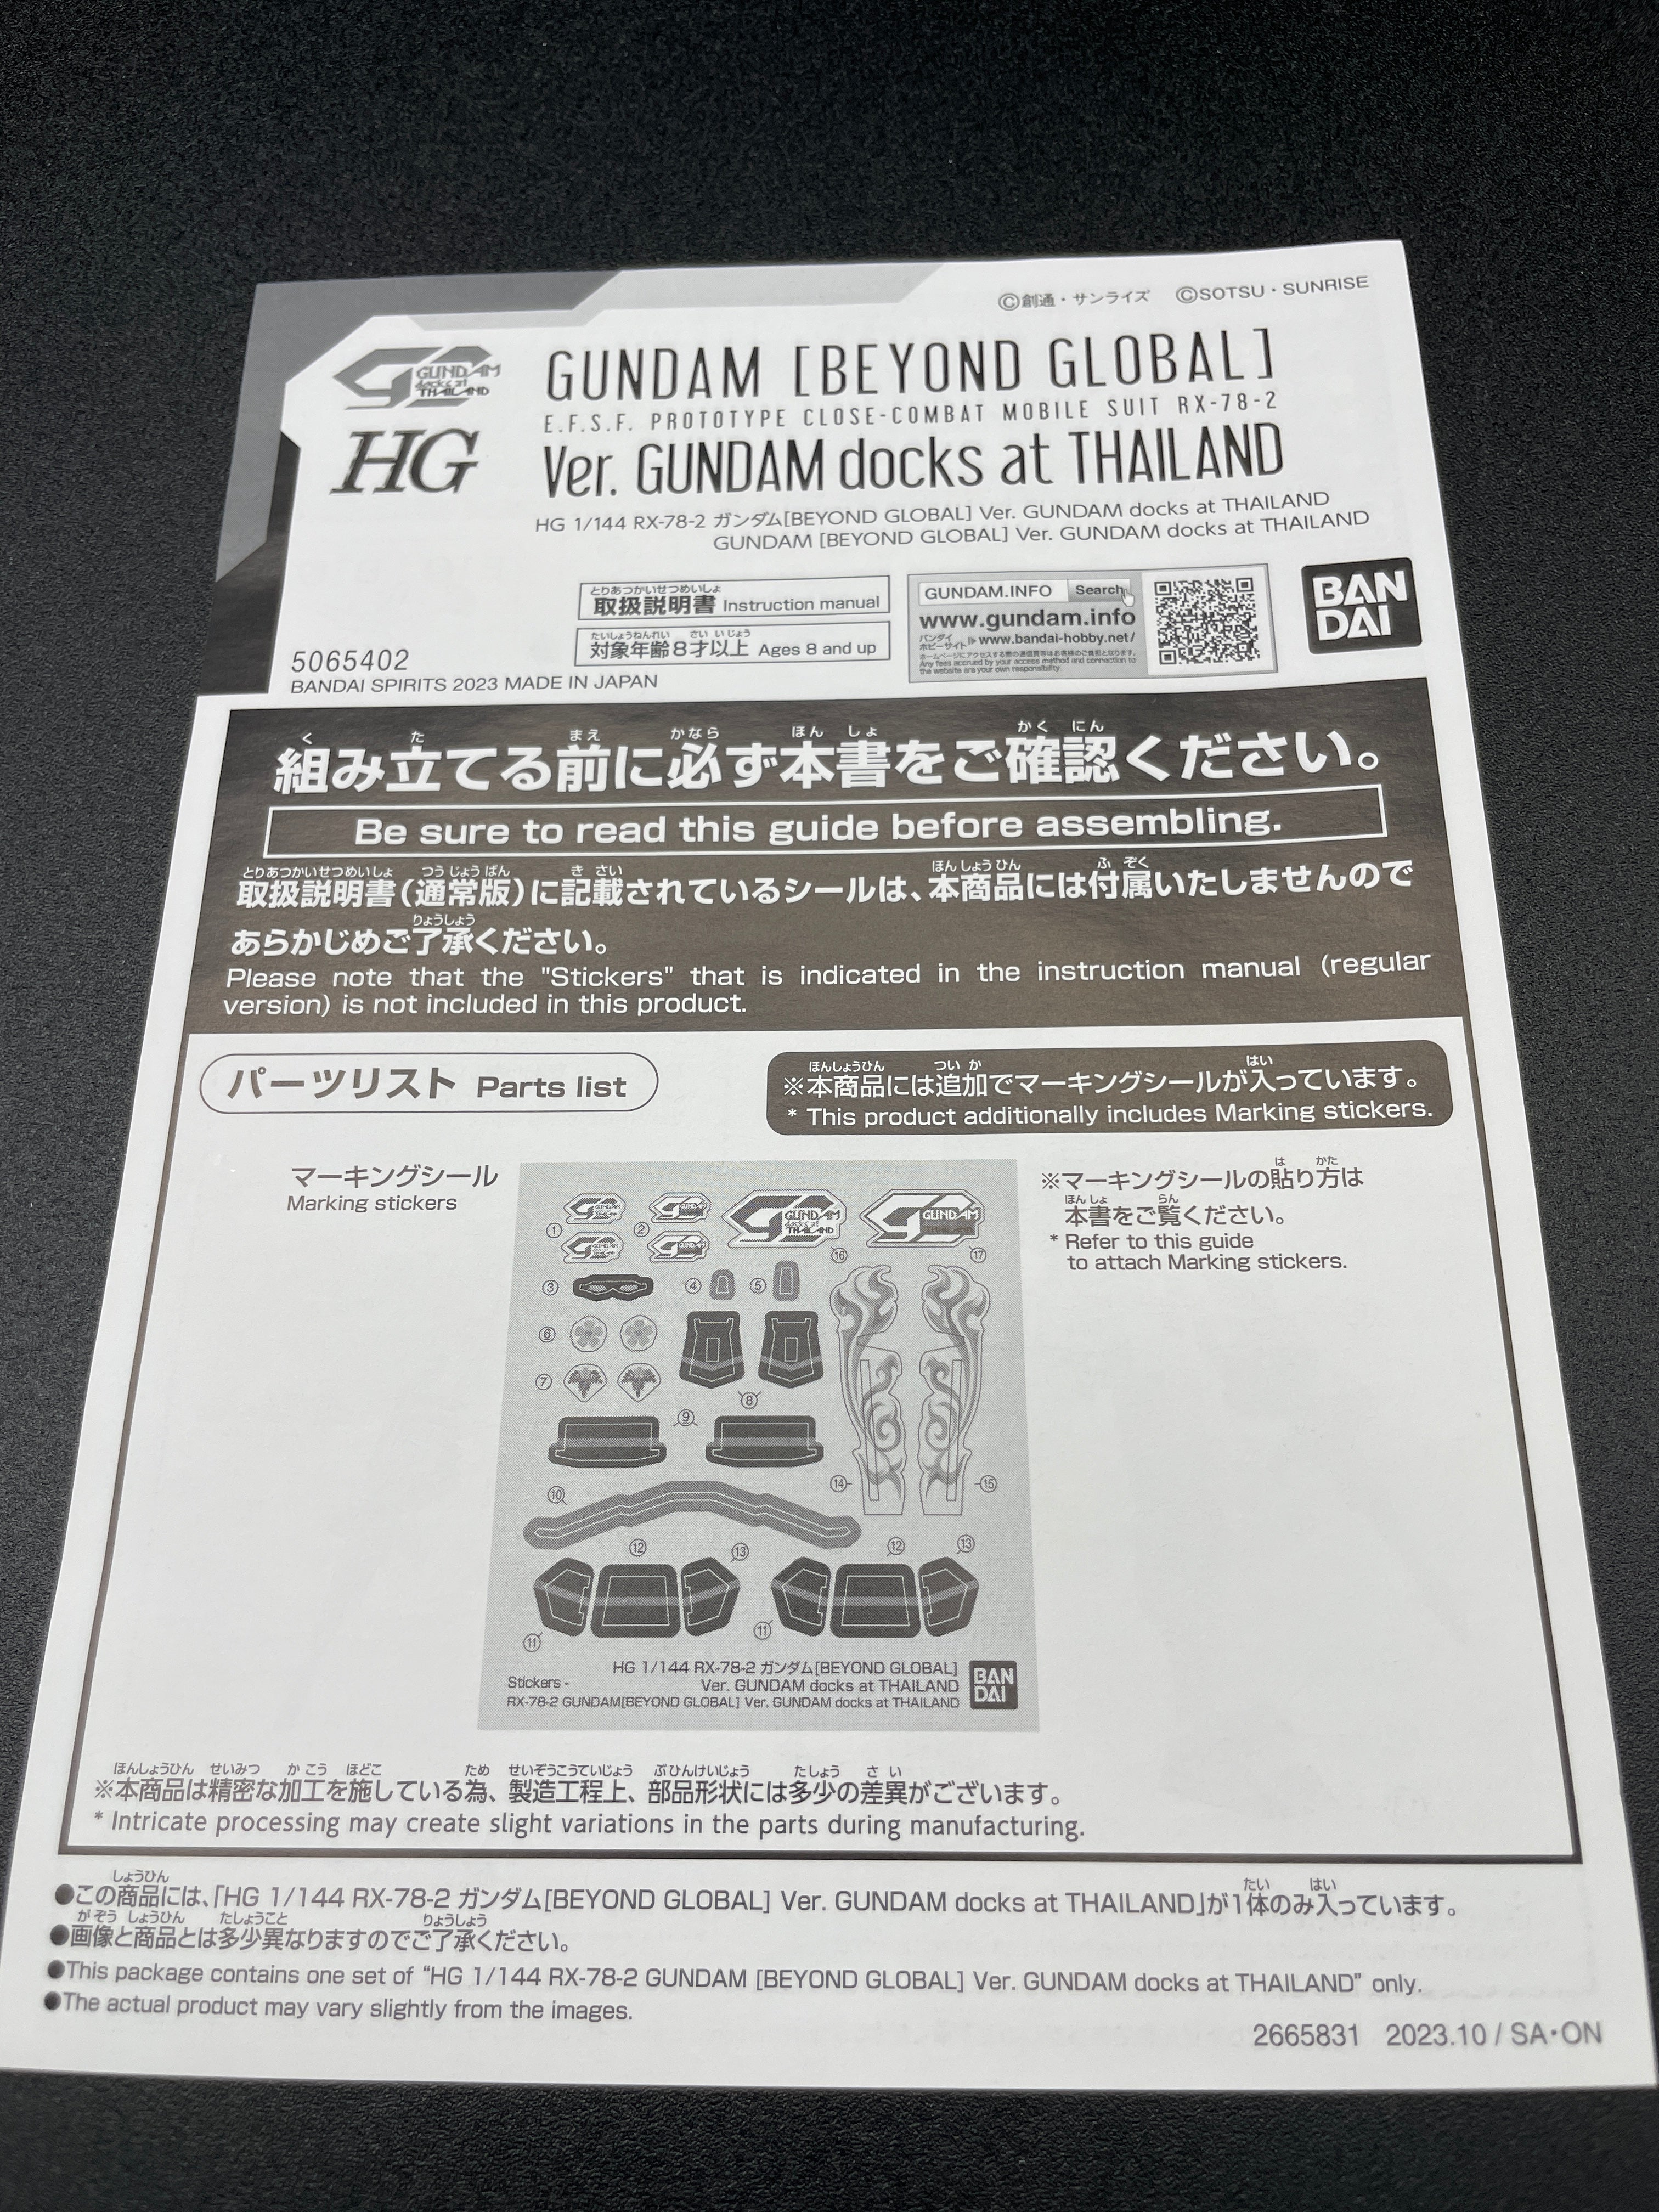 Bandai HG 1/144 RX-78-2 Gundam [Beyond Global] Ver. Gundam Docks At Thailand